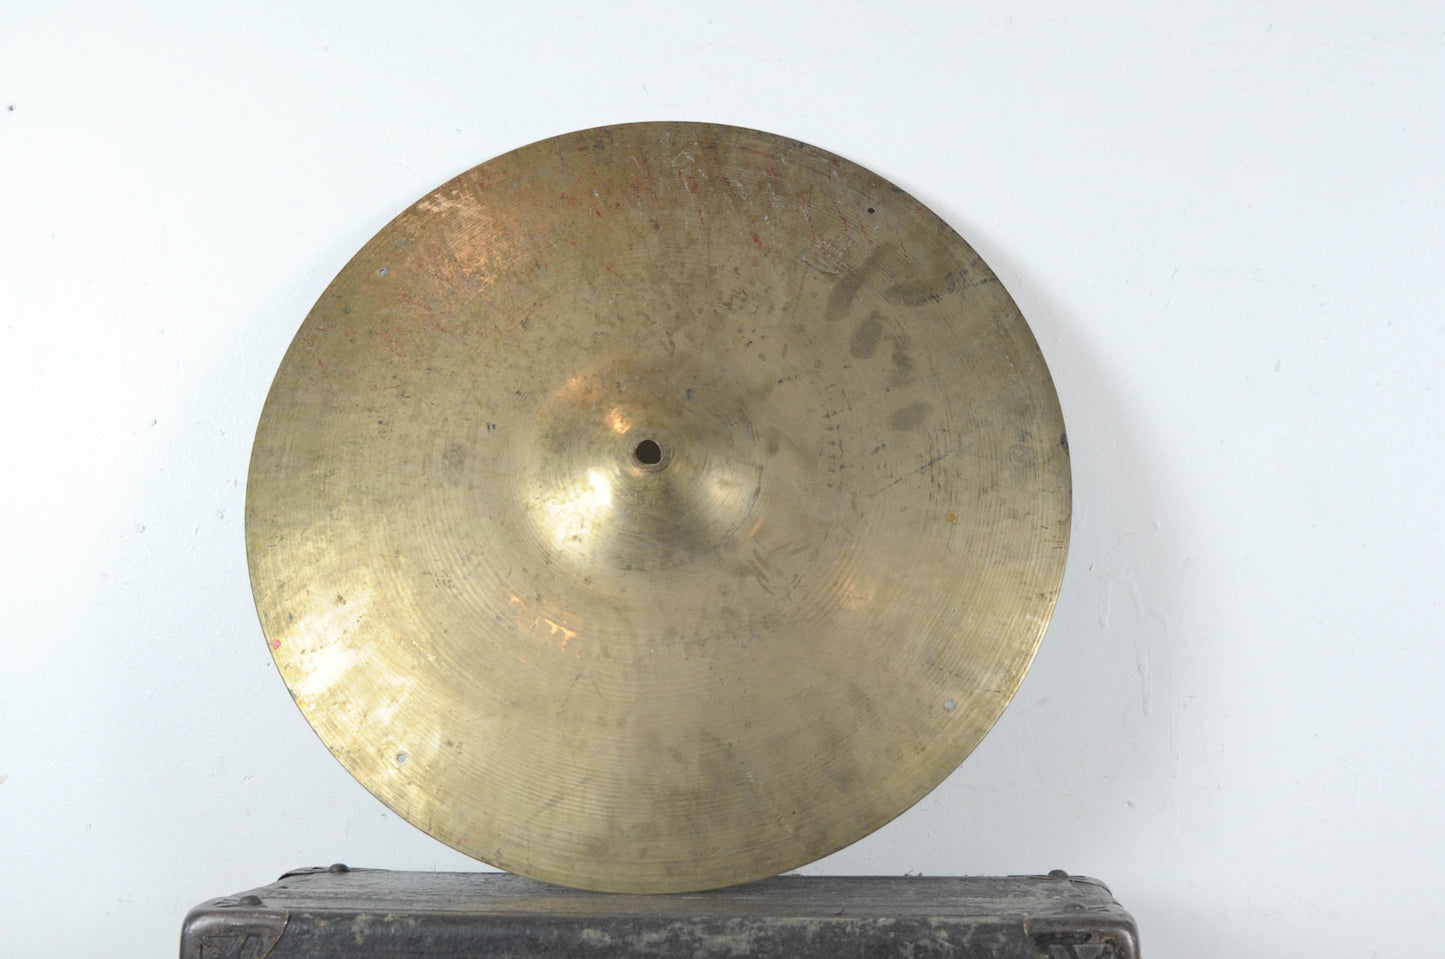 1960s Zildjian A 18" Ride Cymbal 2127g